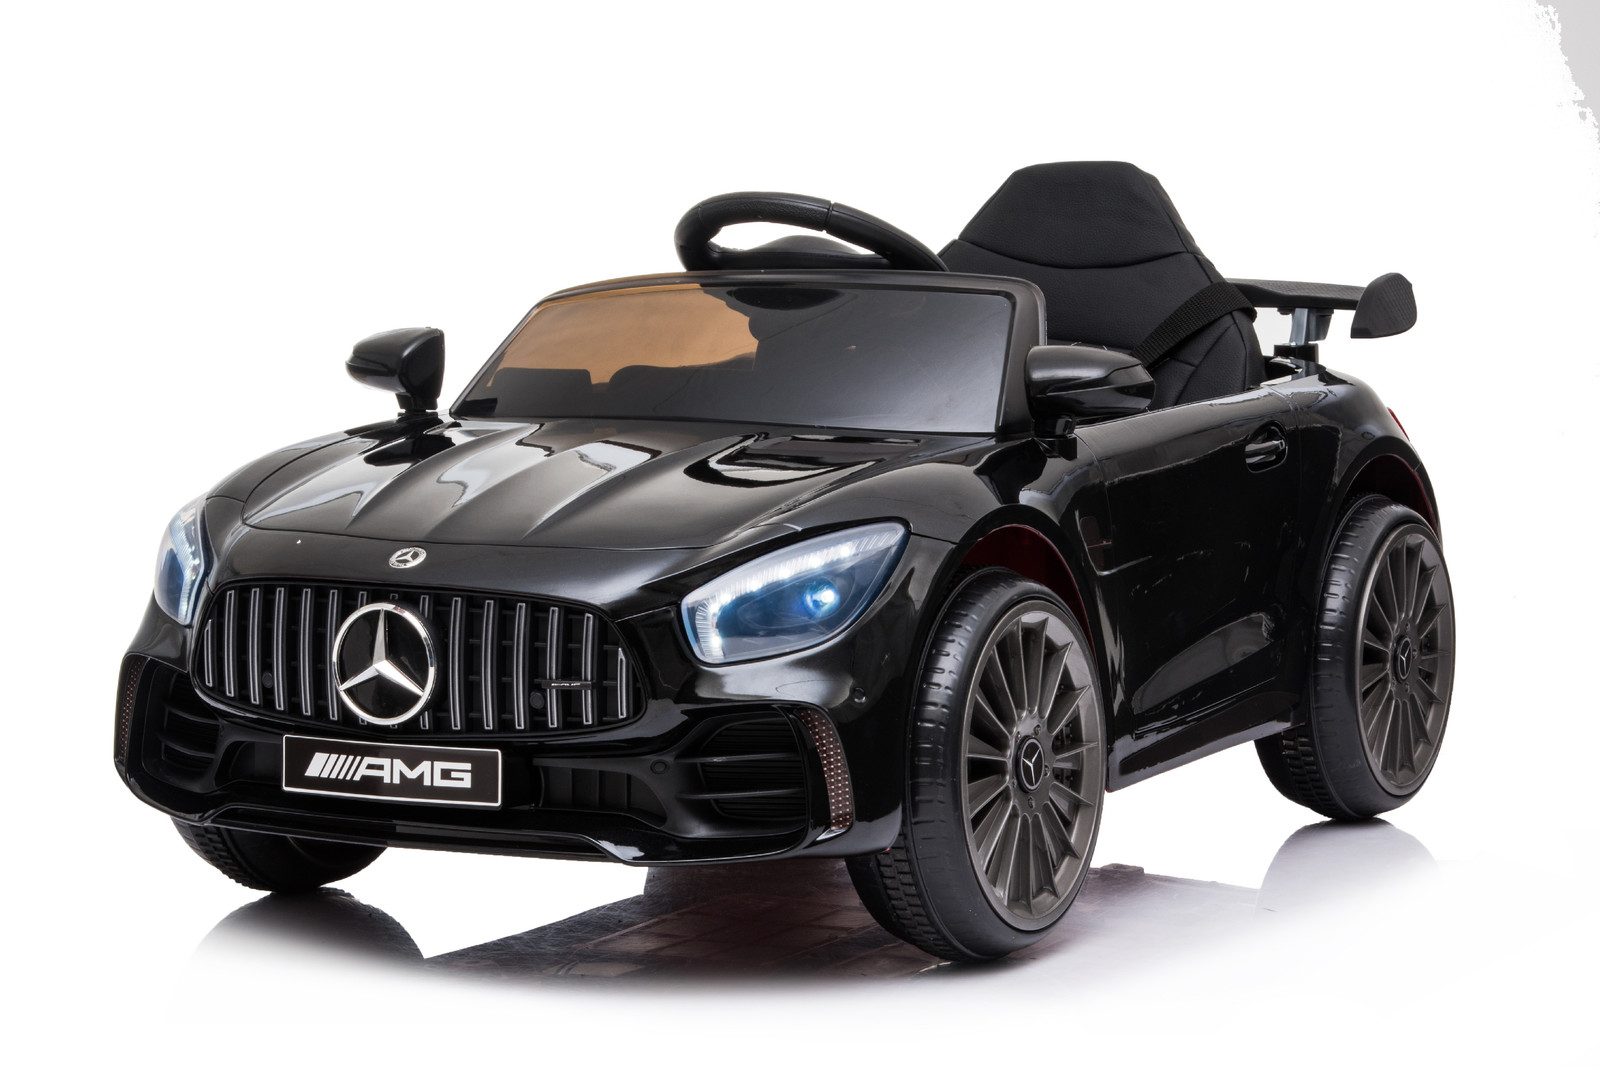 Mamido Mamido Dětské elektrické autíčko Mercedes AMG GT R Pro černé